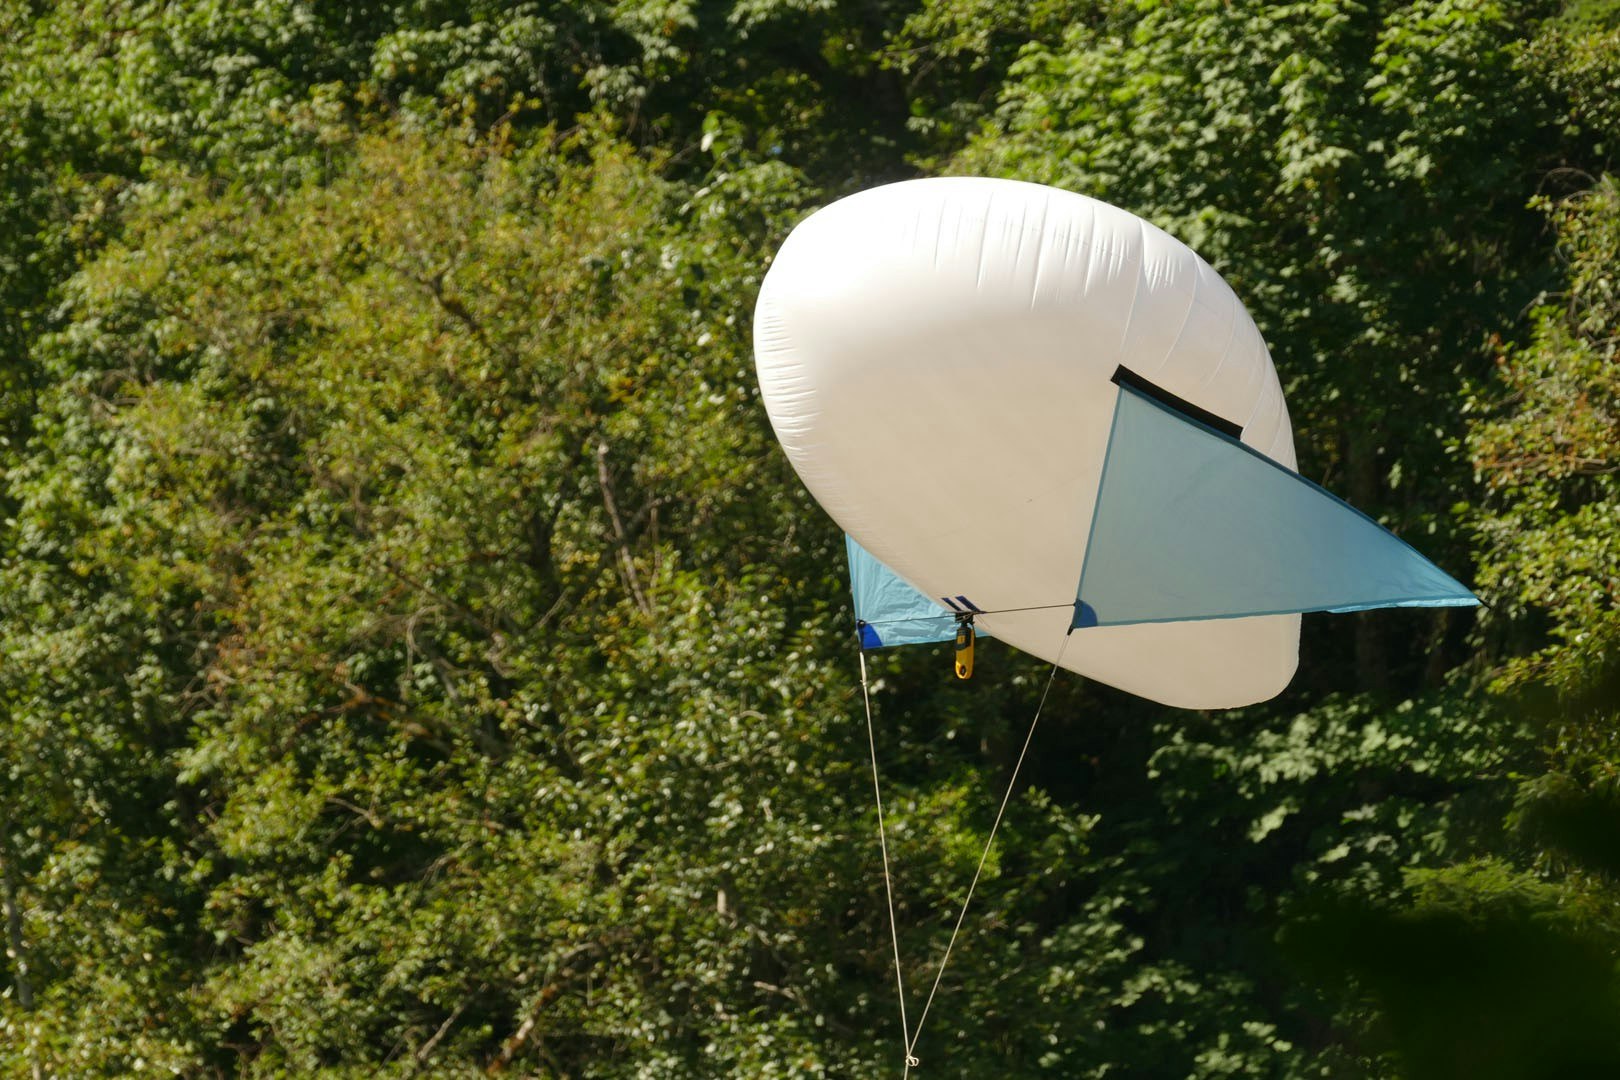 Helium balloon with no kite